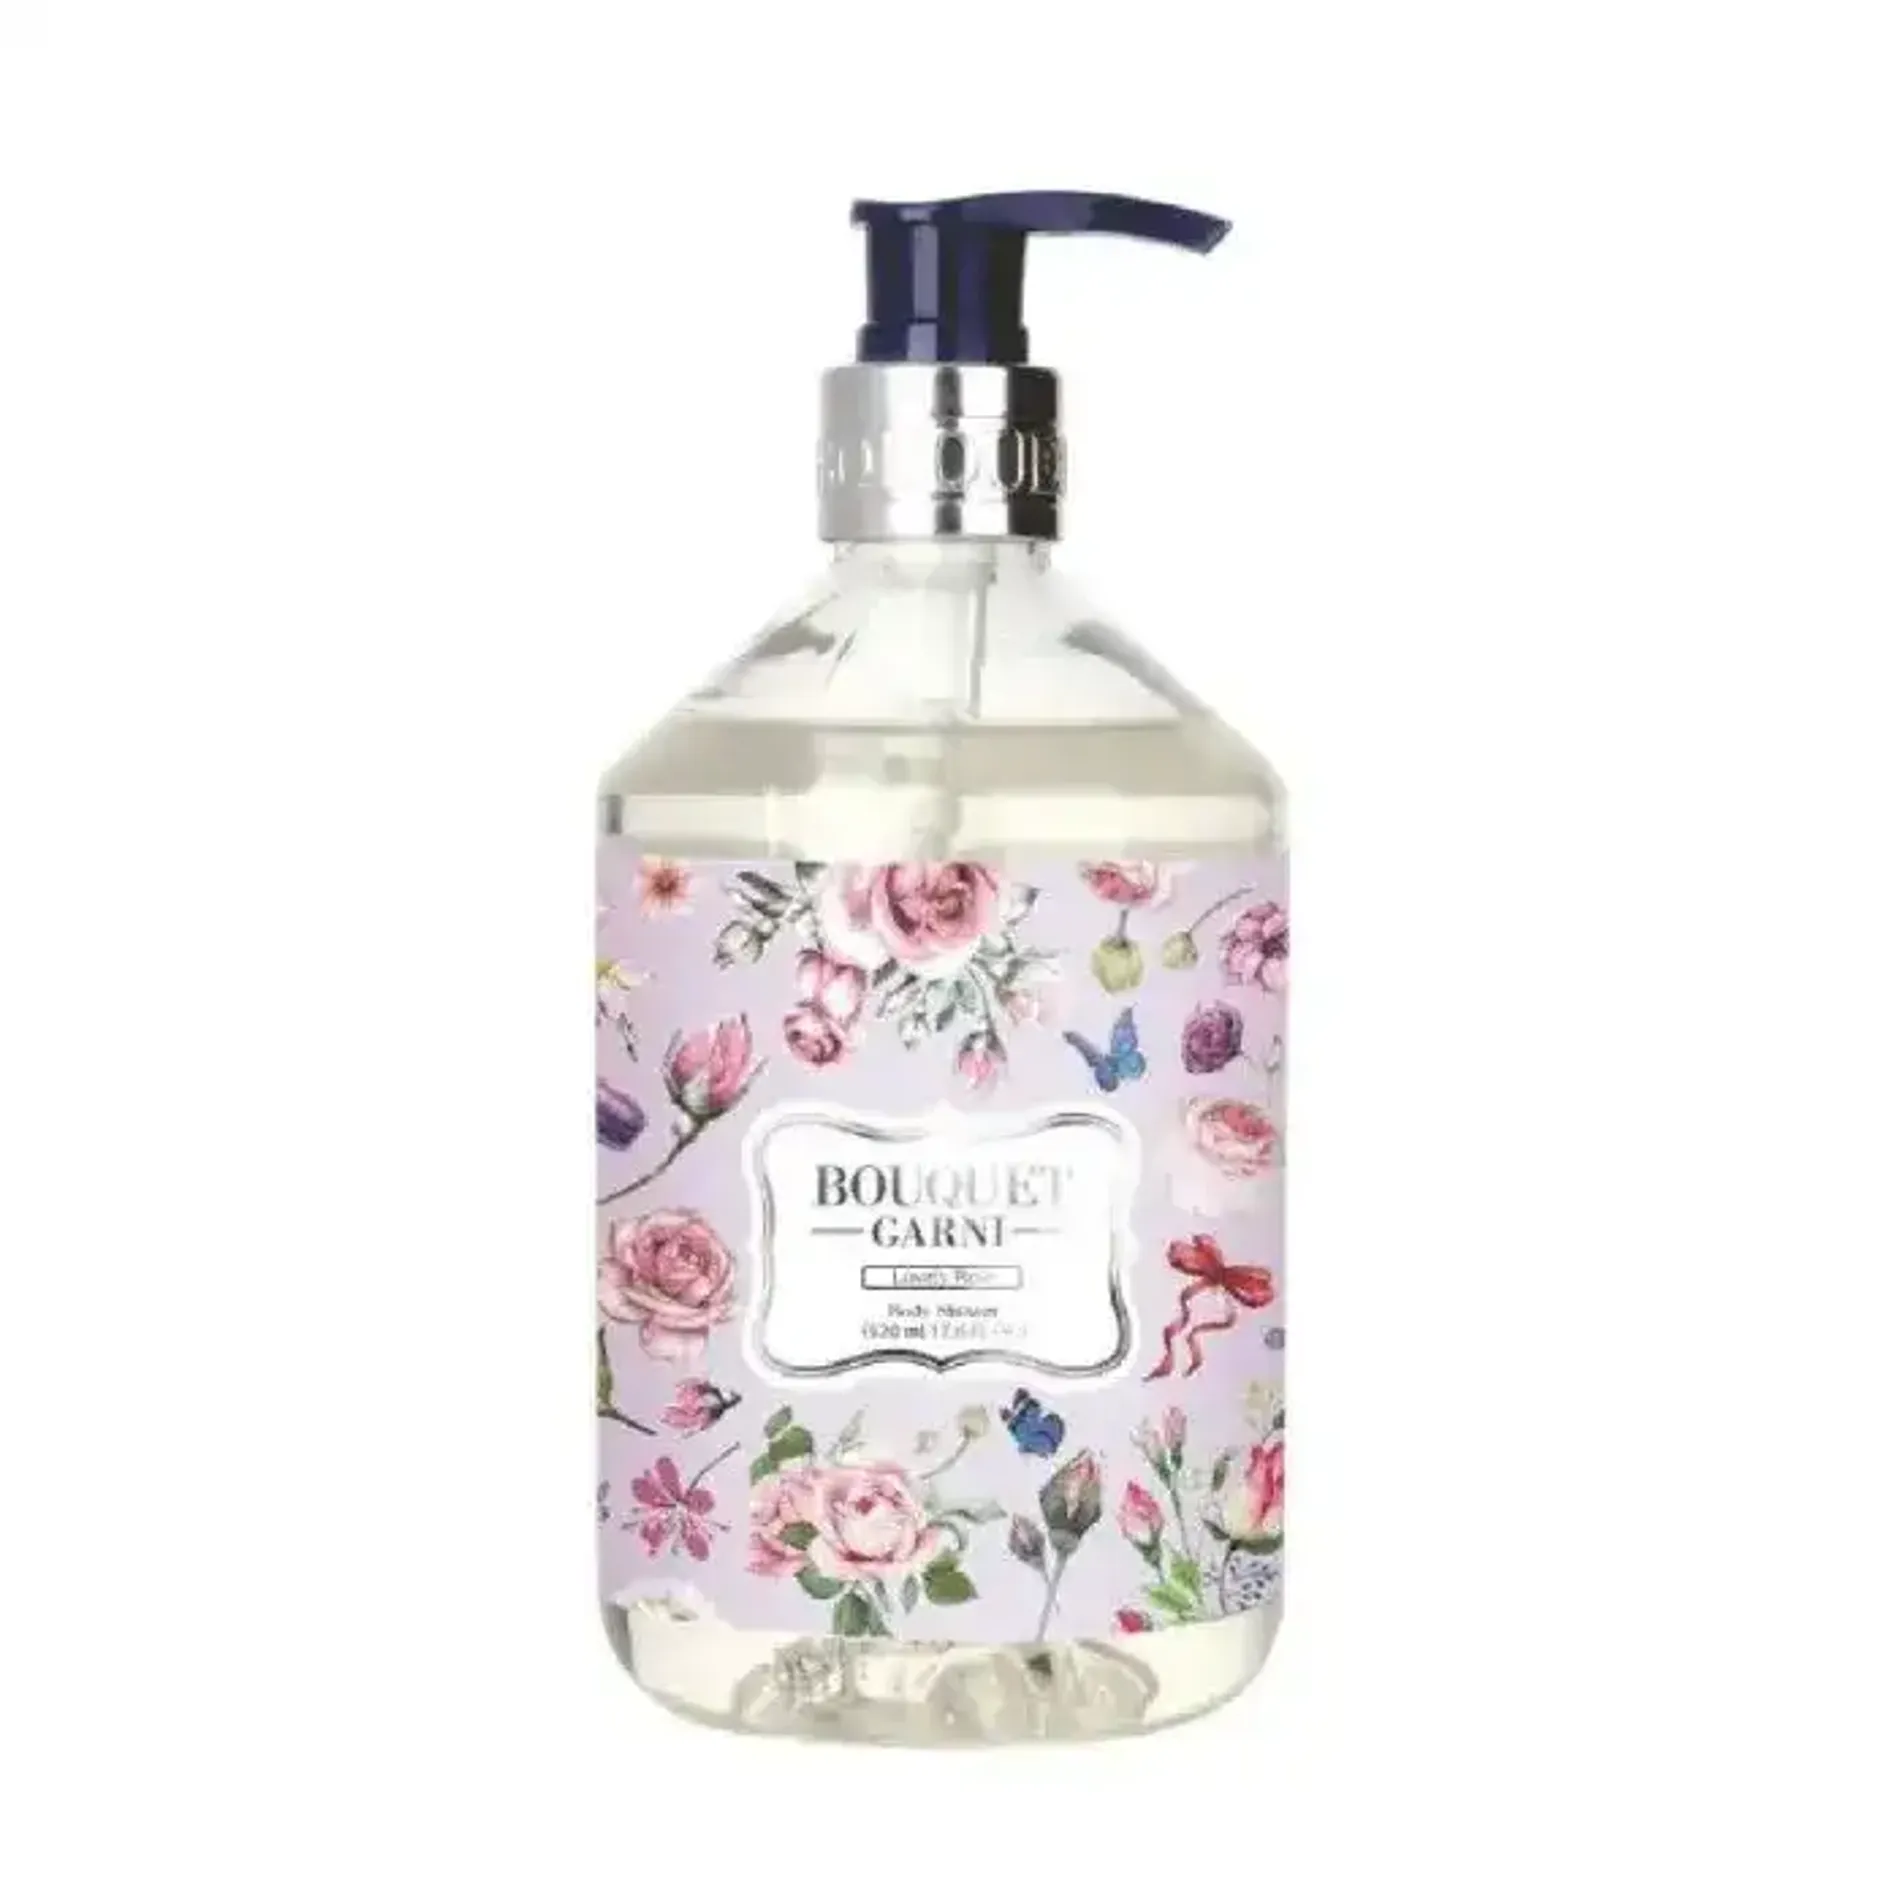 sua-tam-bouquet-garni-fragranced-body-shower-lovely-rose-520ml-1